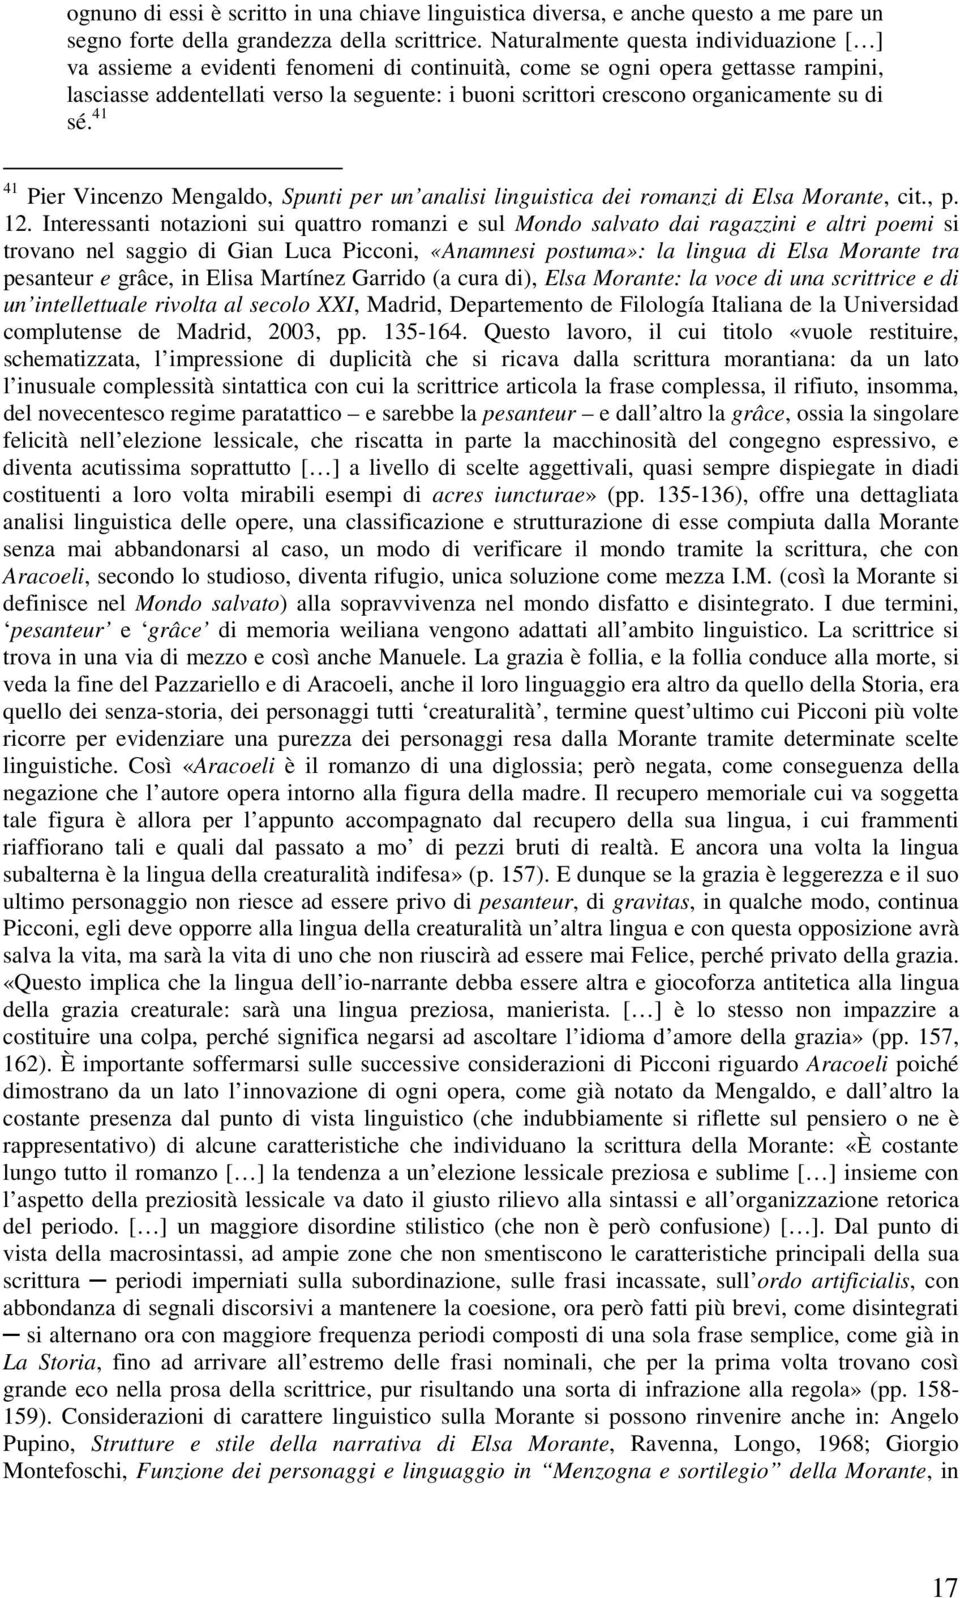 organicamente su di sé. 41 41 Pier Vincenzo Mengaldo, Spunti per un analisi linguistica dei romanzi di Elsa Morante, cit., p. 12.